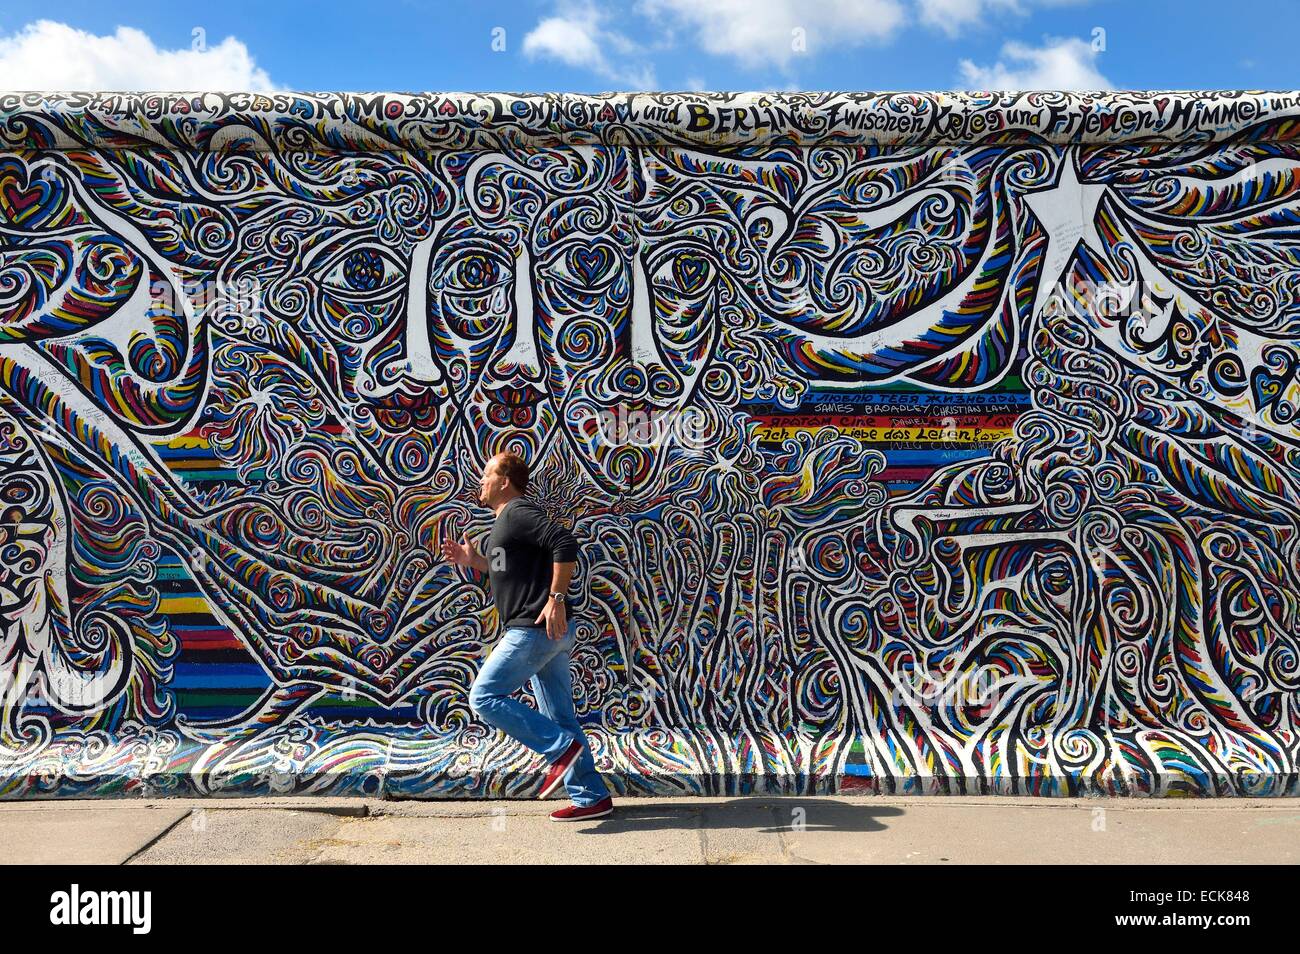 Germania, Berlino, Friedrichshain-Kreuzberg, Galleria sul lato orientale del Muro, lavoro di artista Schamil Gimajew risalente gli anni novanta rinnovato nel 2009 Foto Stock